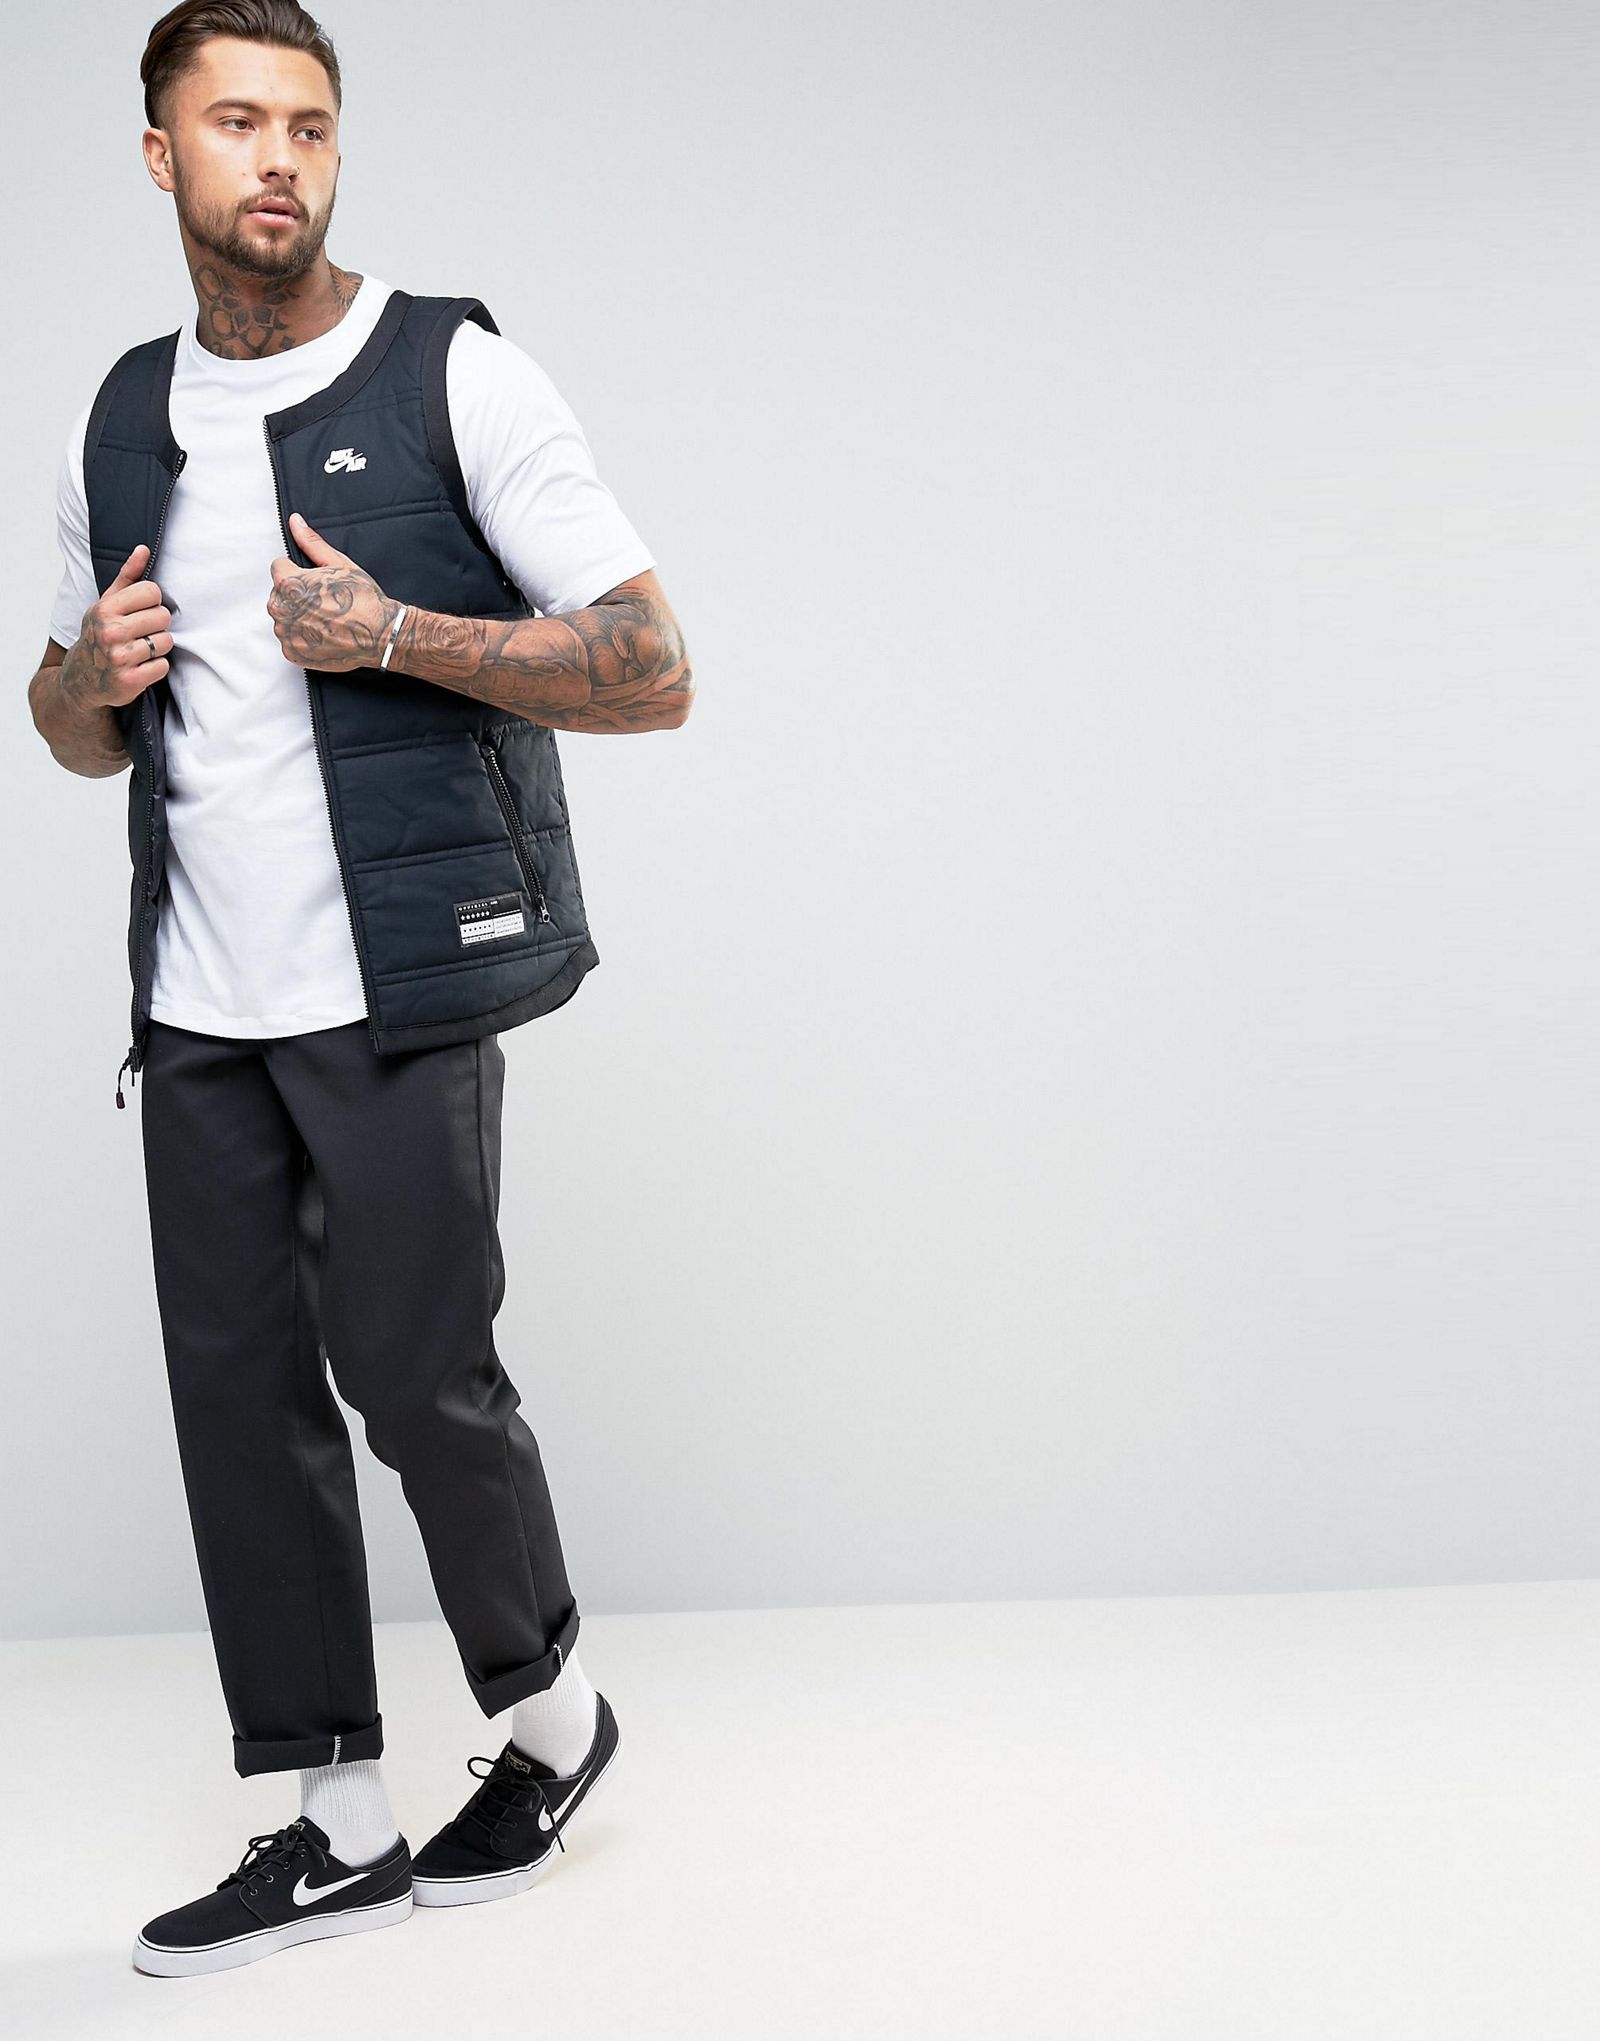 Nike Air Vest In Black 802648-010